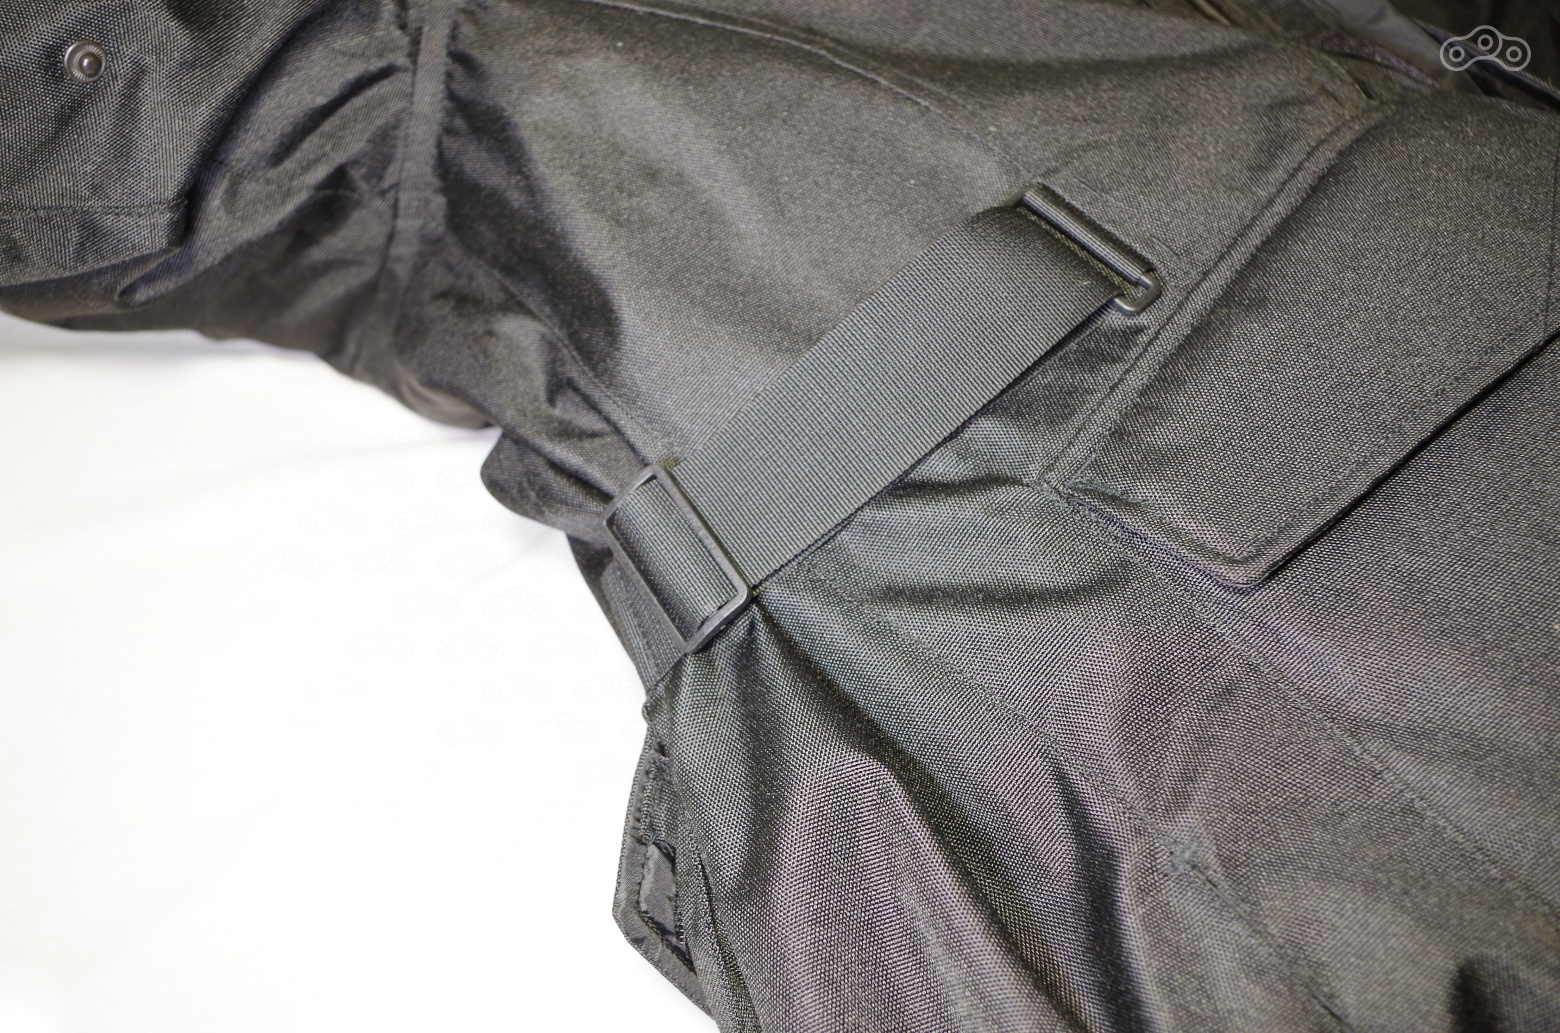 Ремешки позволяют подогнать куртку под конкретную фигуру, чтобы ничего не болталось и сидело идеально.